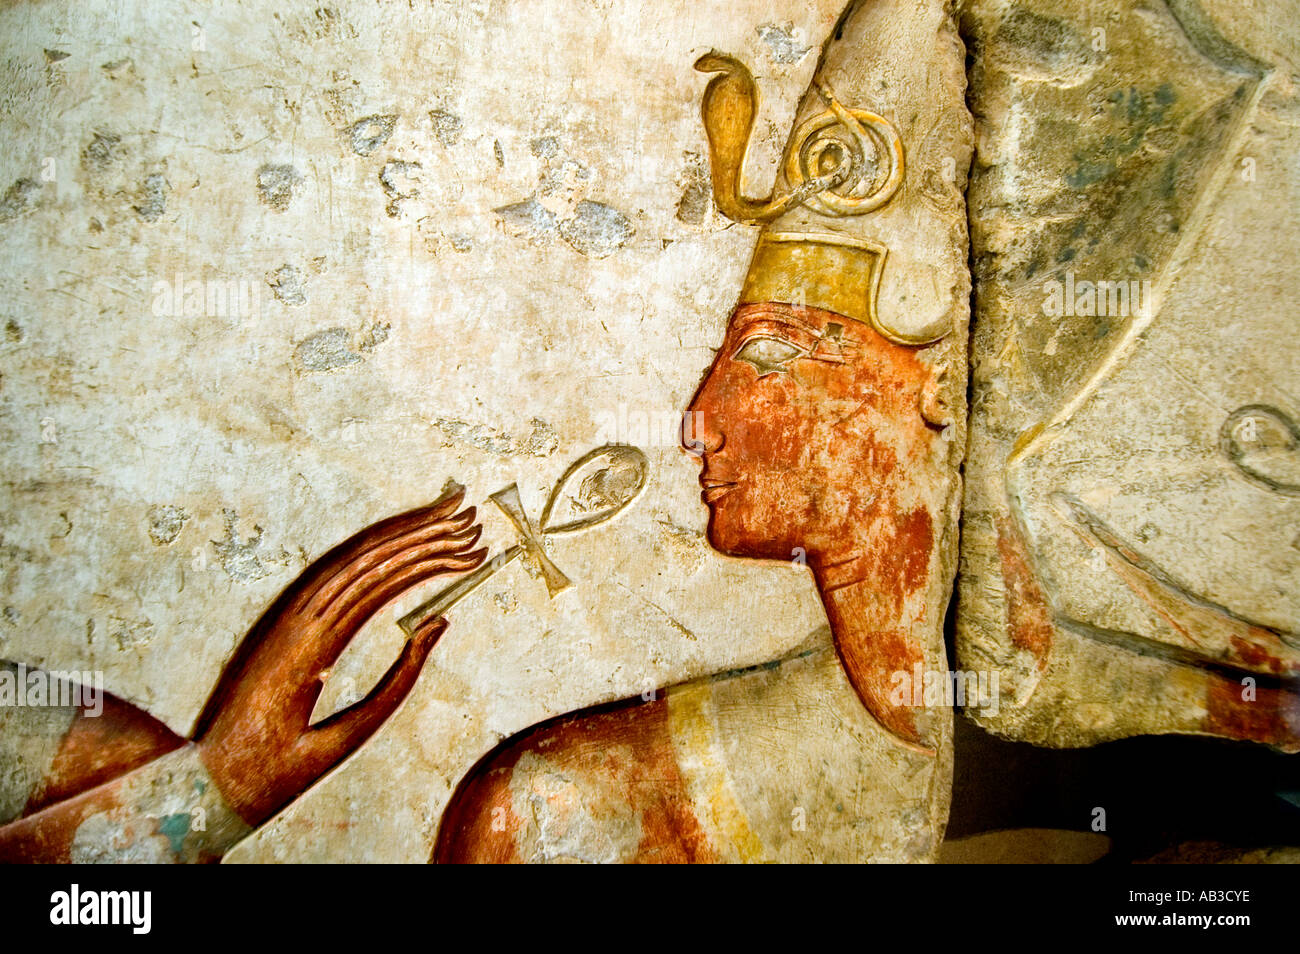 Ägypten-Ägyptisches Museum-Archäologie-Zivilisation Stockfoto